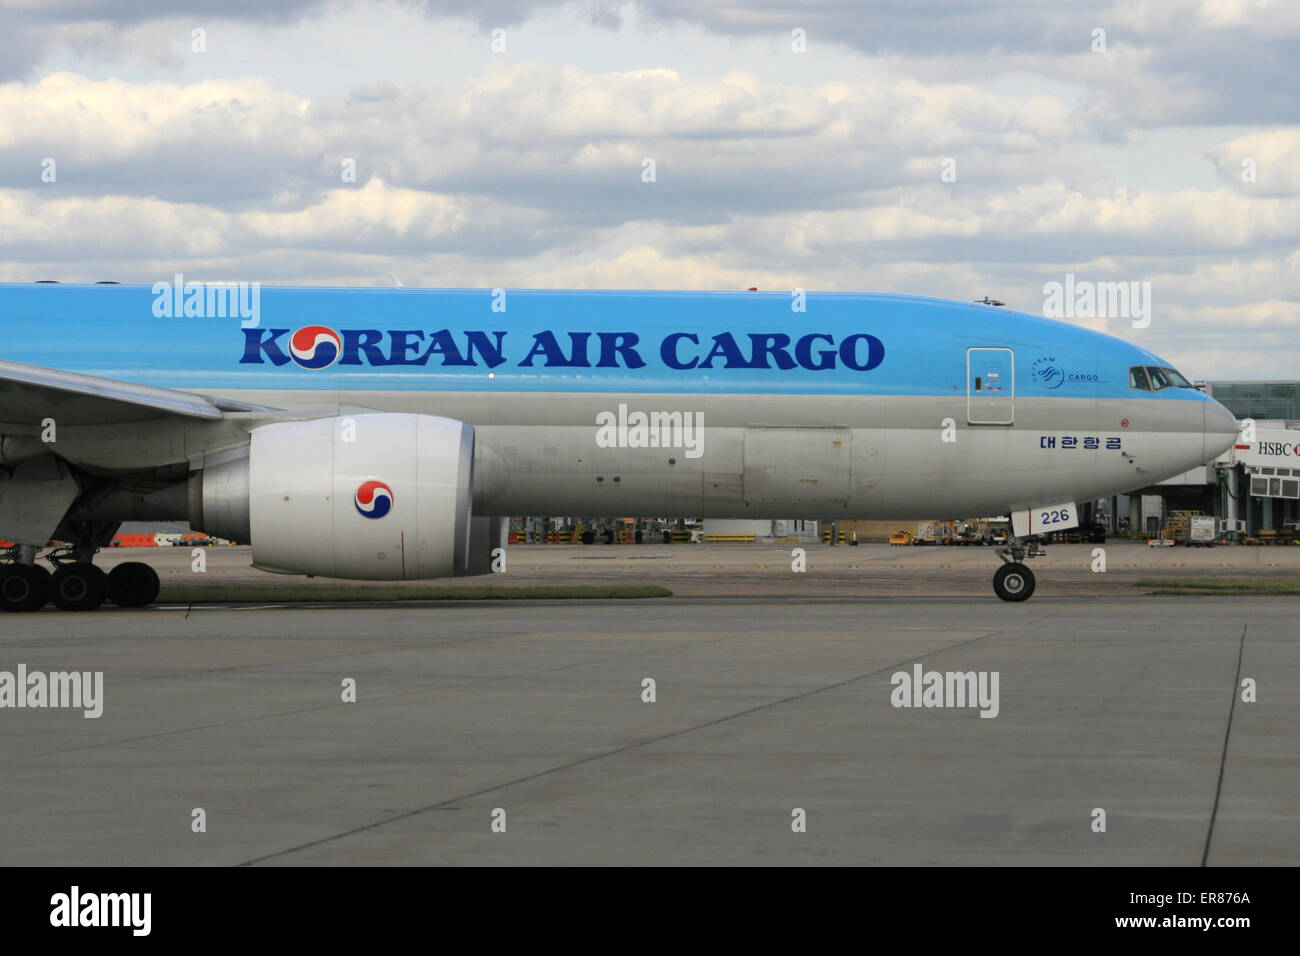 KOREAN AIR CARGO 777 Stock Photo